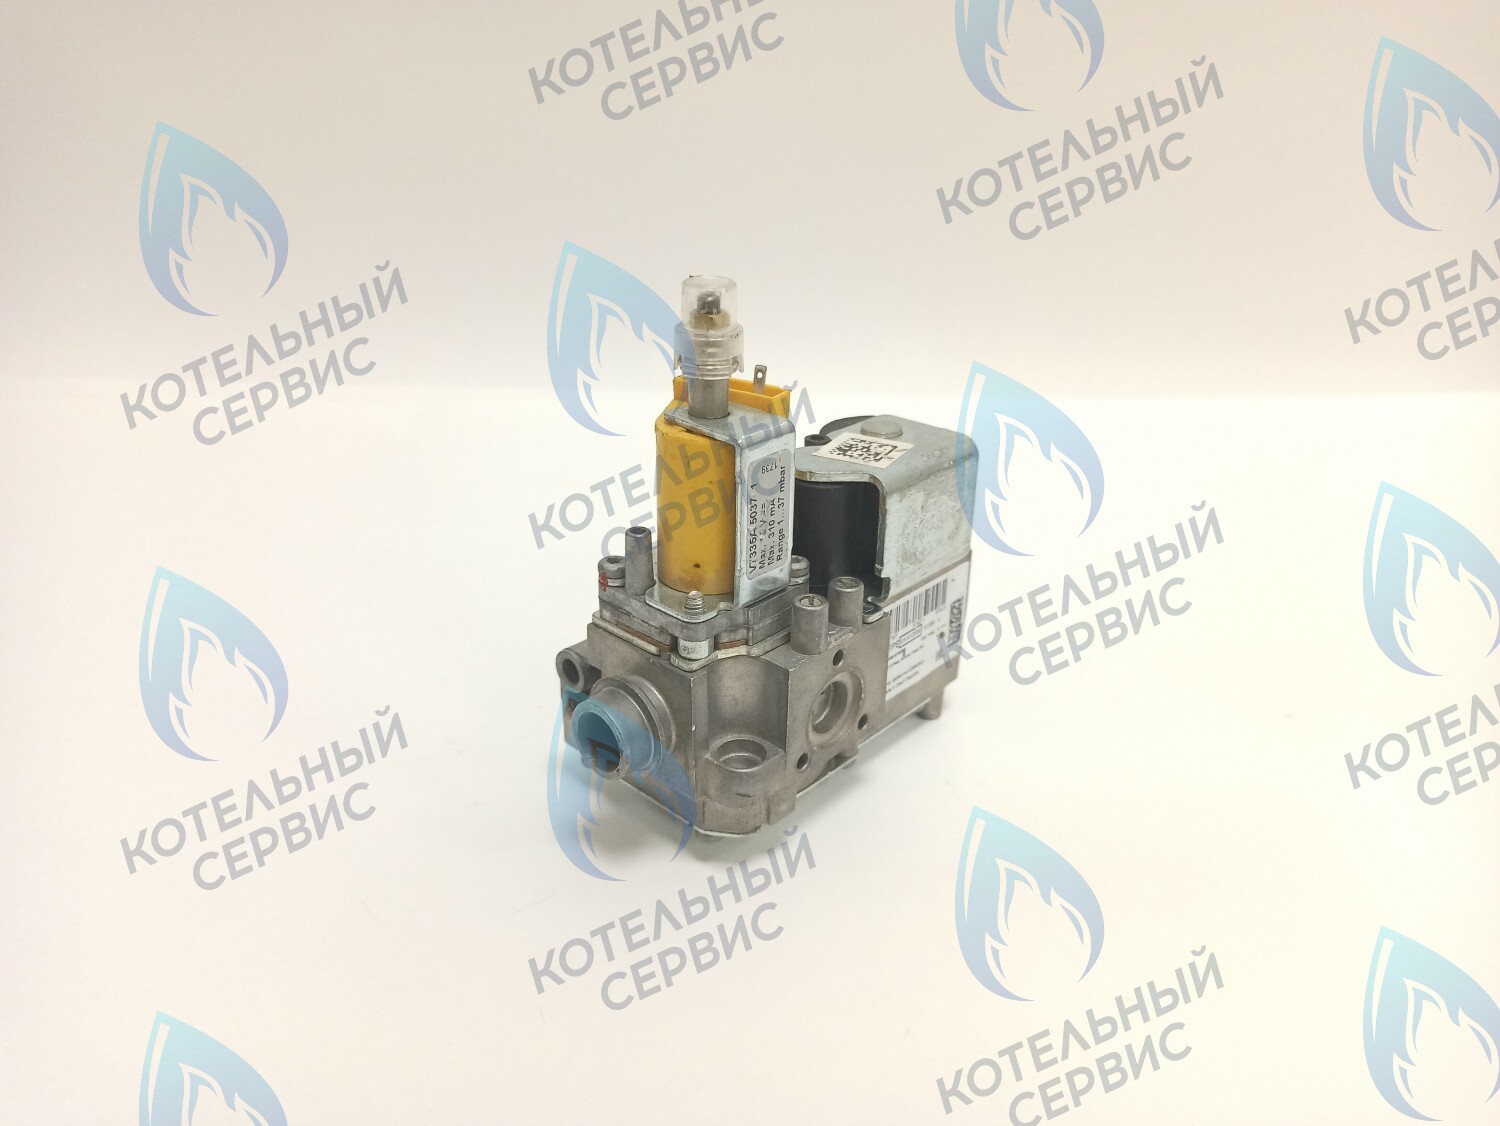 GV011 Газовый клапан  (VK4105M 5199) BAXI MAIN-5 710660400 в Москве